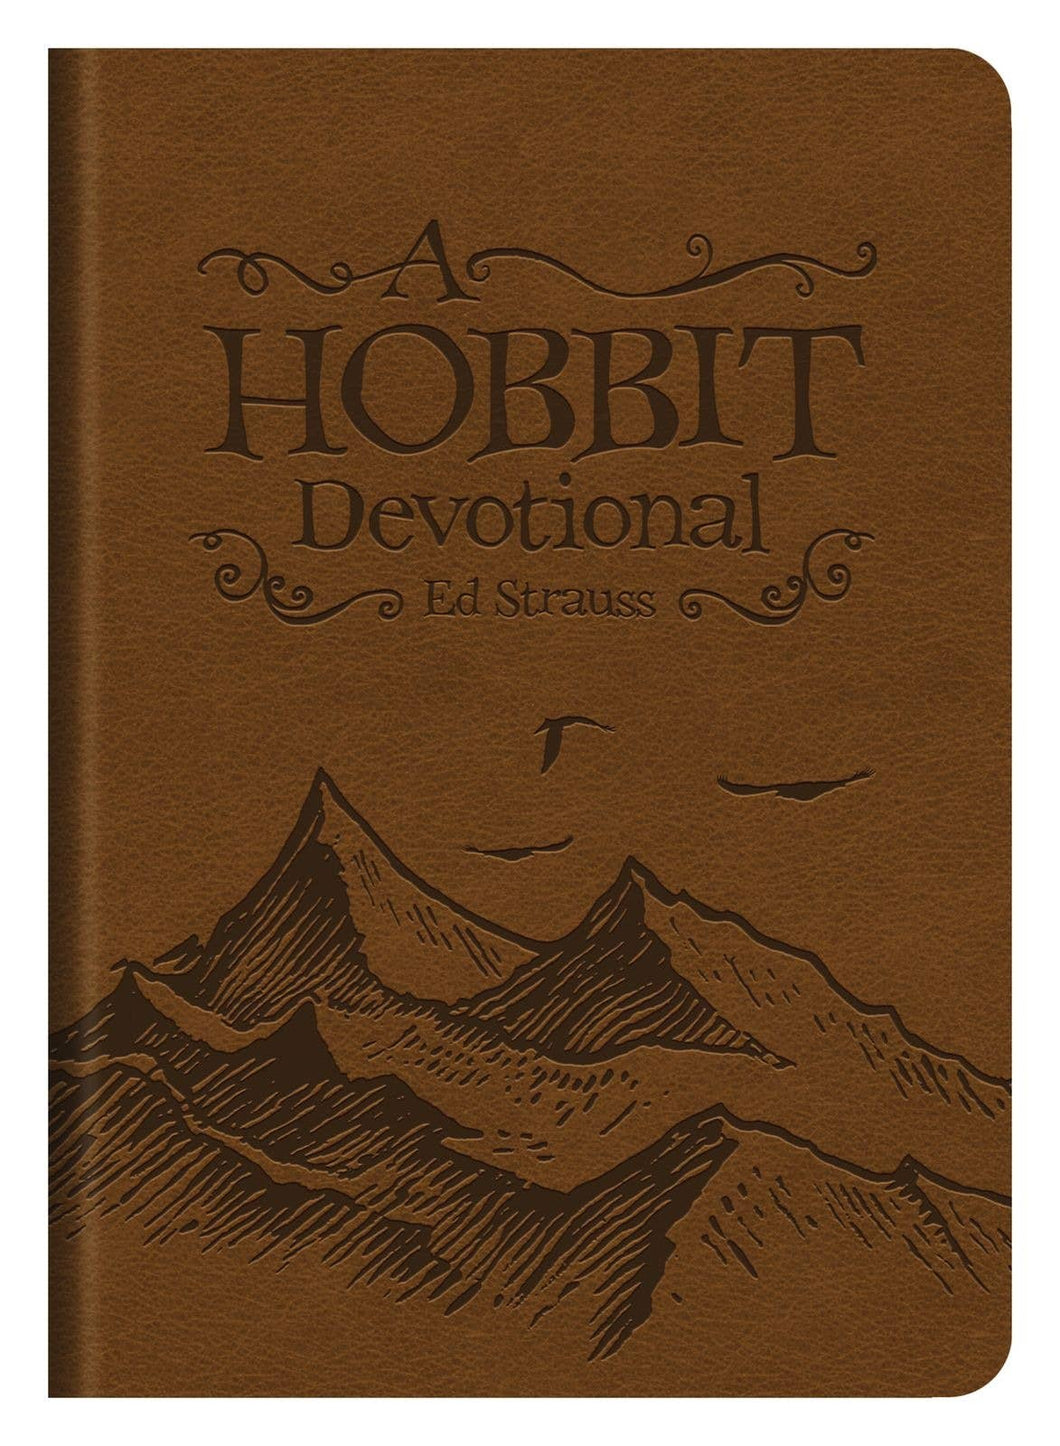 Hobbit Devotional